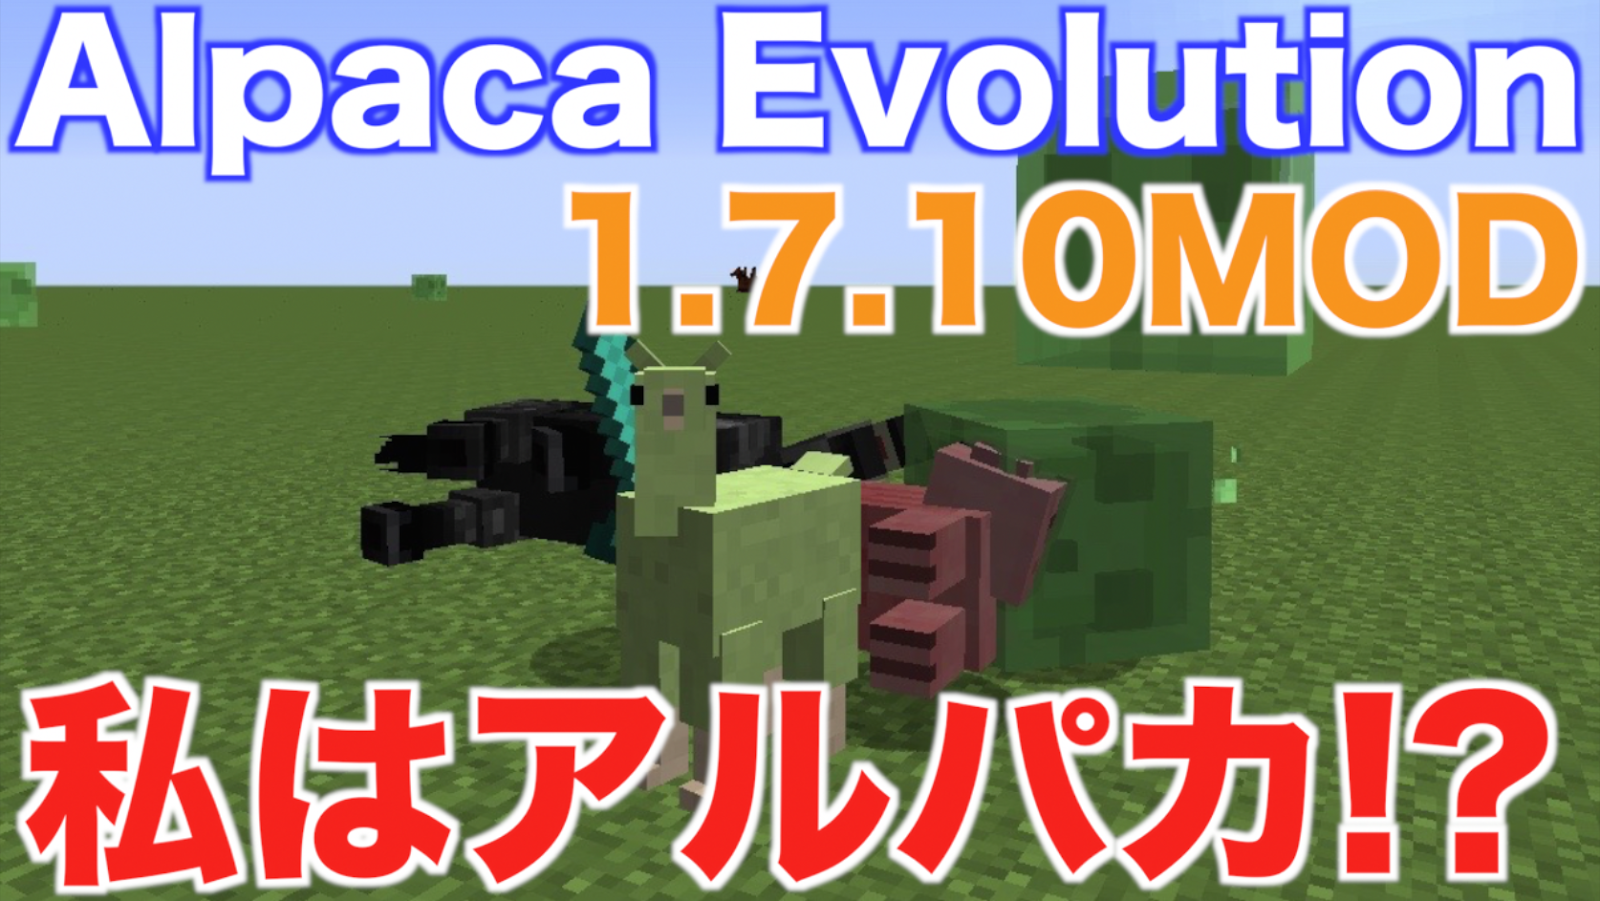 僕はマインクラフト Mod紹介ブログ Minecraft アルパカになっちゃった Mod 1 7 10mod Alpaca Evolution